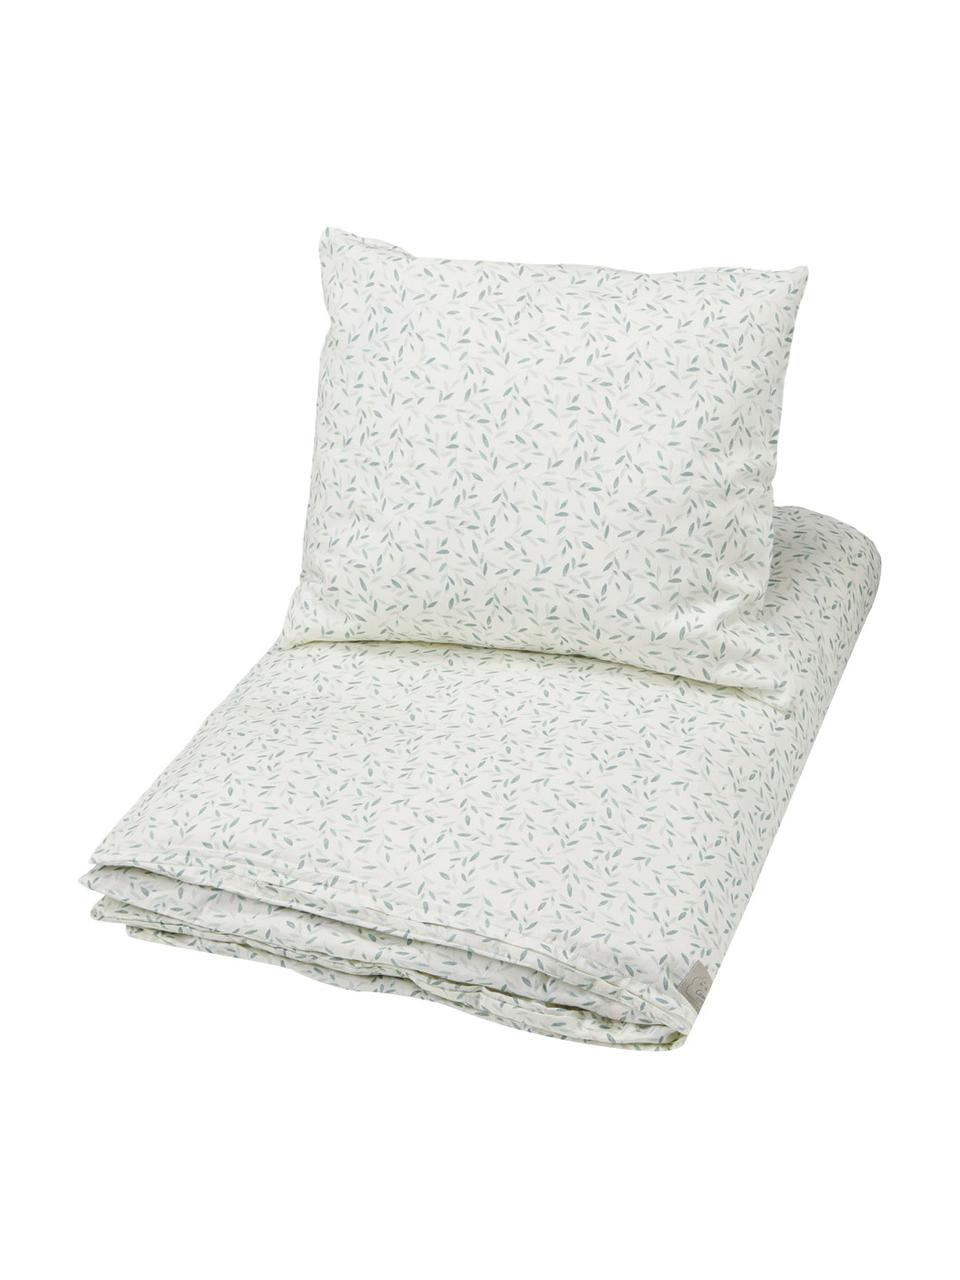 Ropa de cama de algodón ecológico satinado Green Leaves, 100% algodón ecológico satinado con certificado GOTS, Blanco y verde estampado, Cuna (100 x 135 cm), 2 pzas.